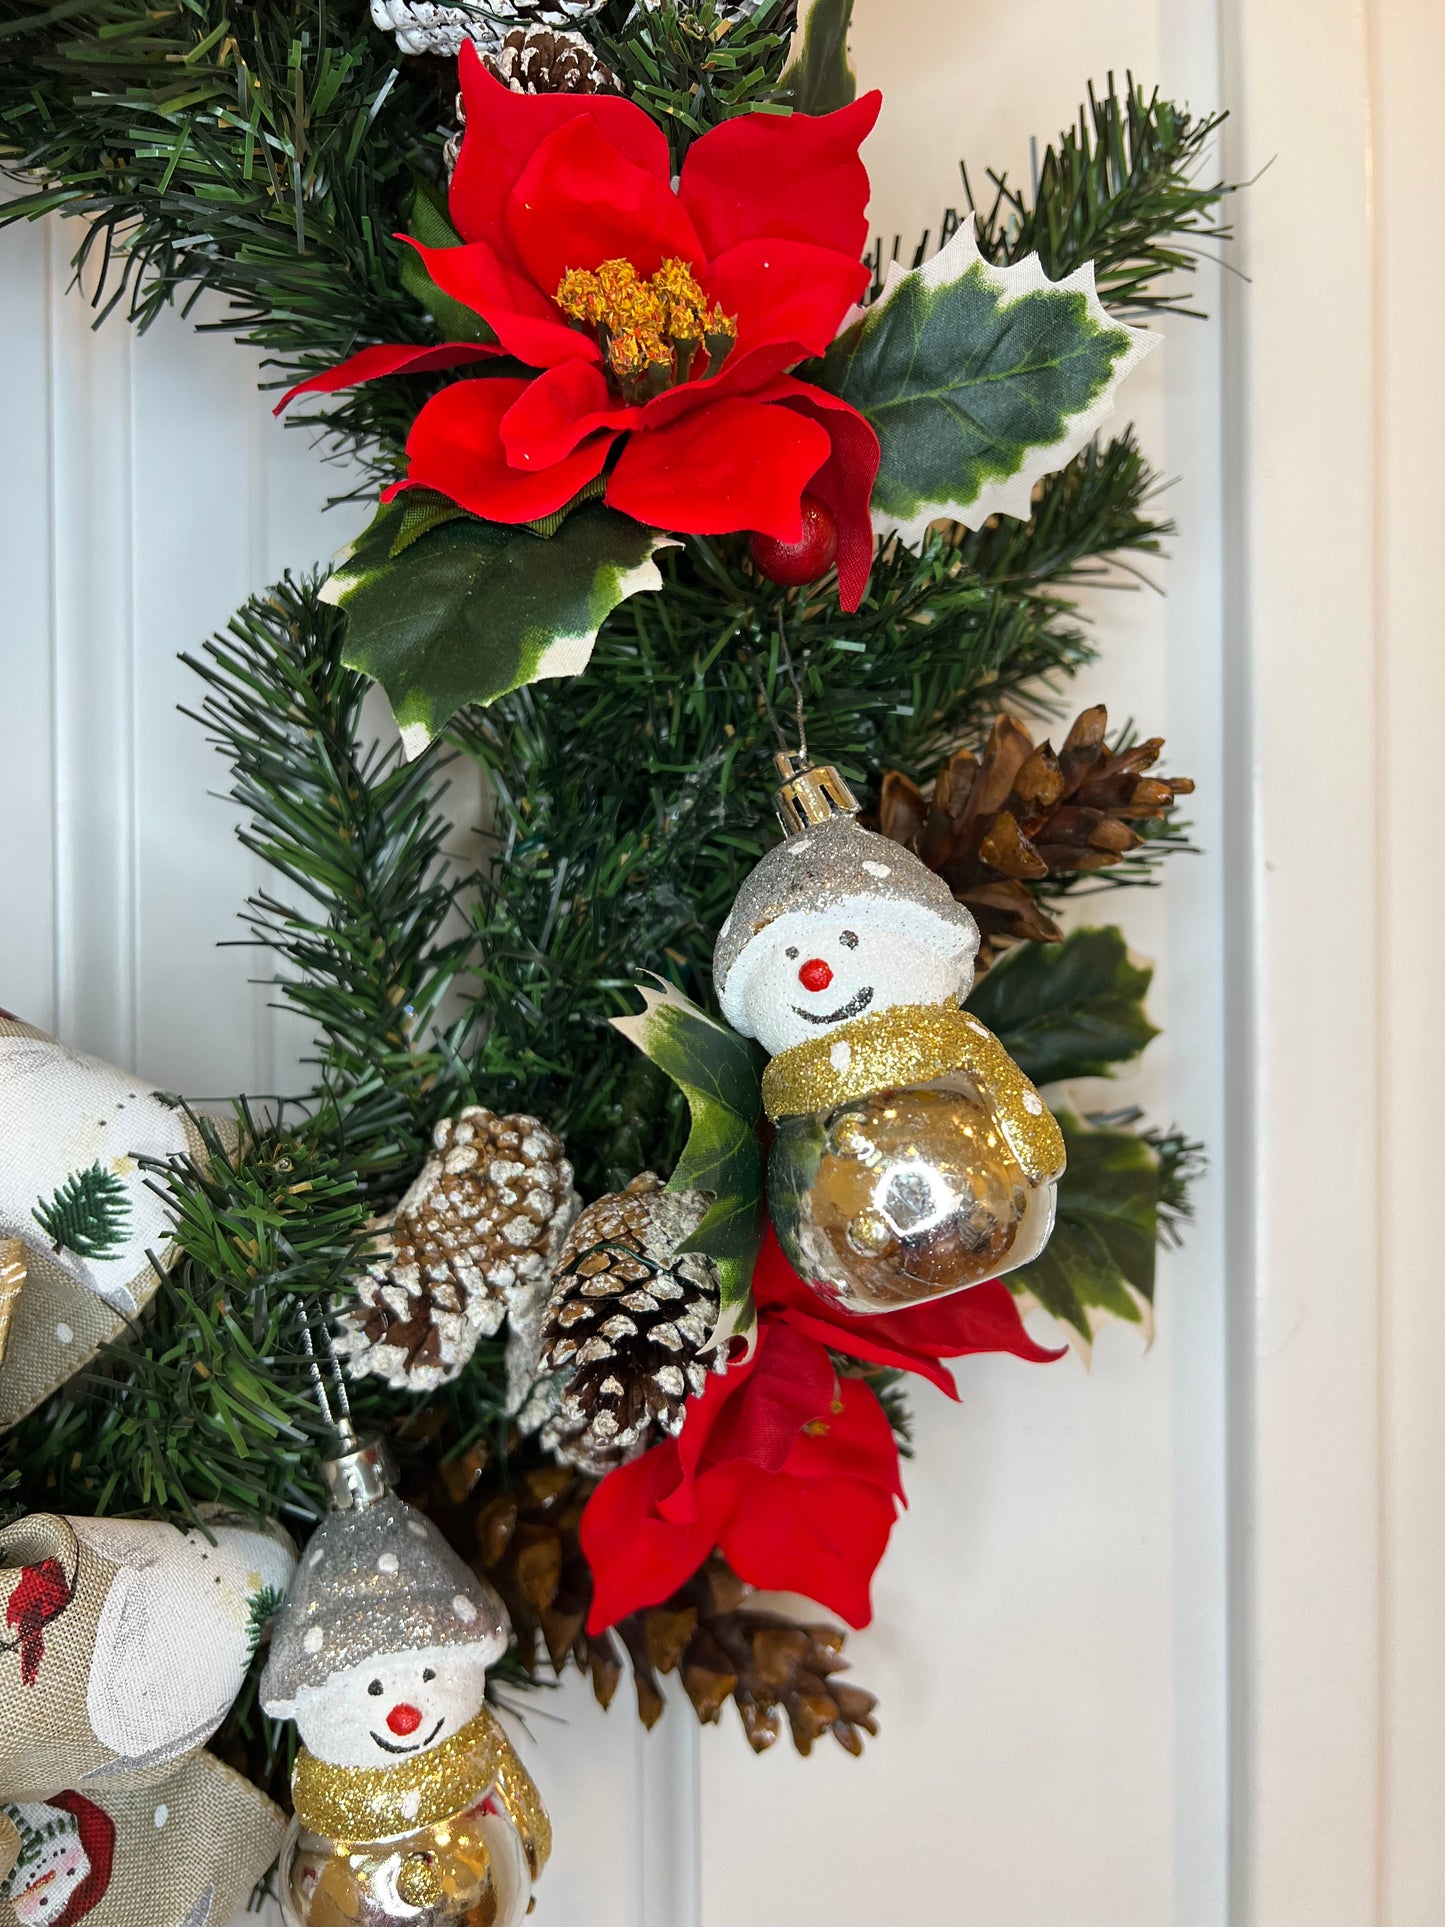 18" Snowman-Themed Wreath